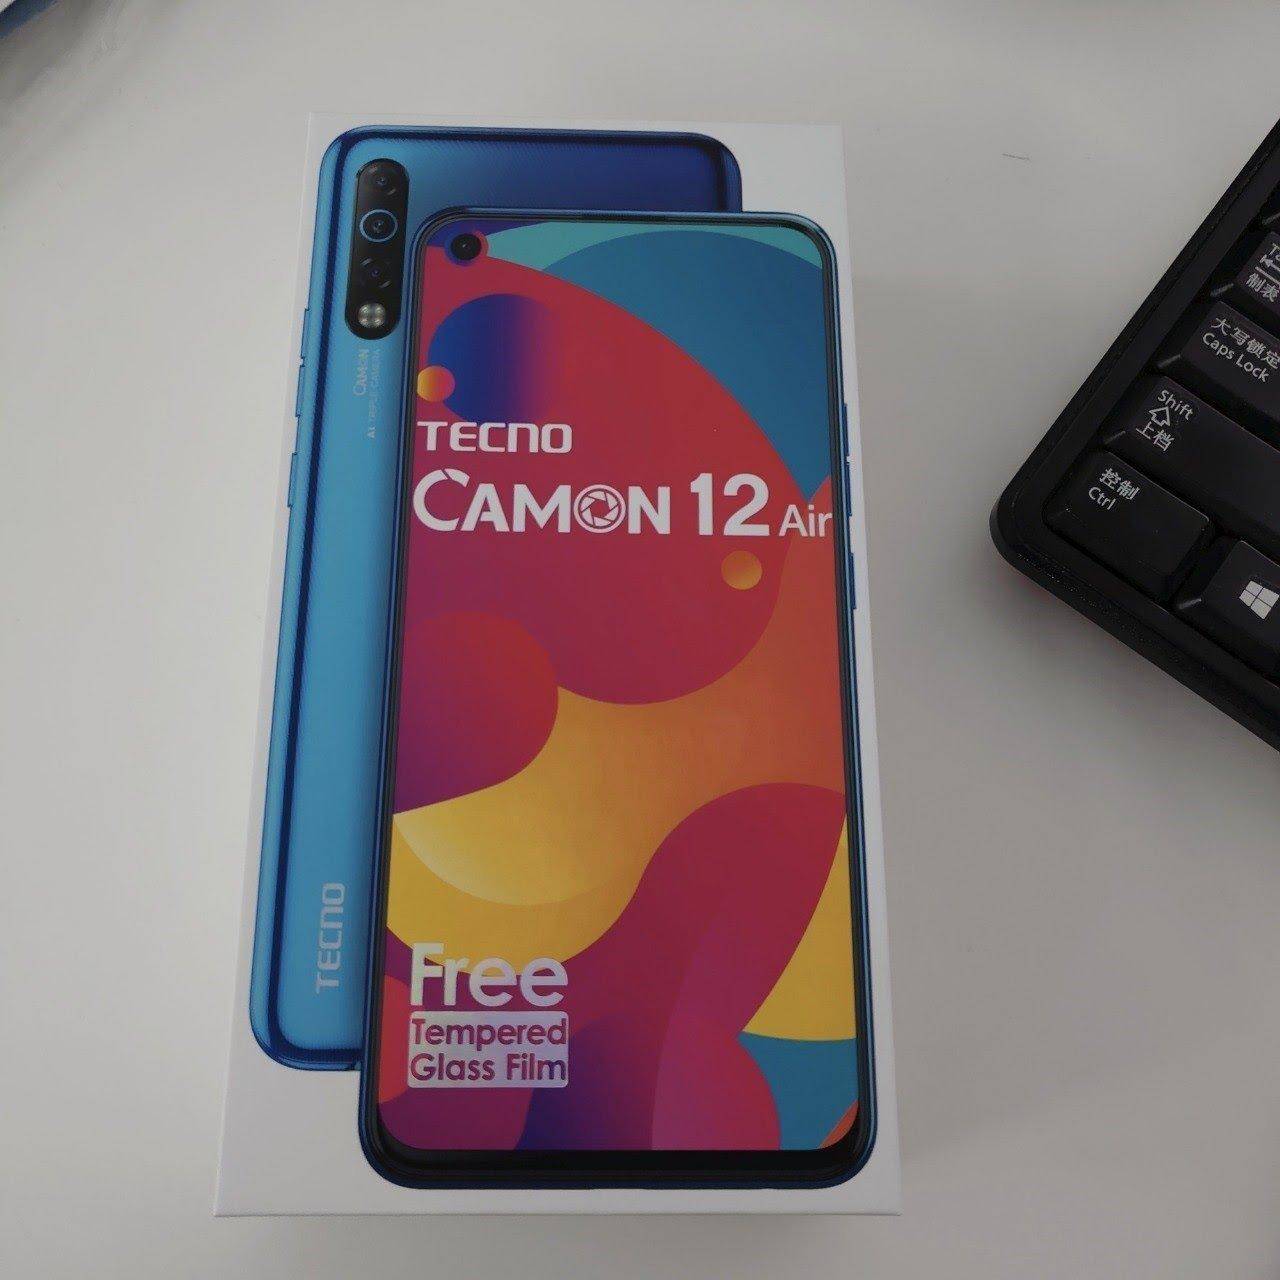 Tecno Camon 12 Air स्मार्टफोन आता है दस हजार रूपये से कम कीमत में 